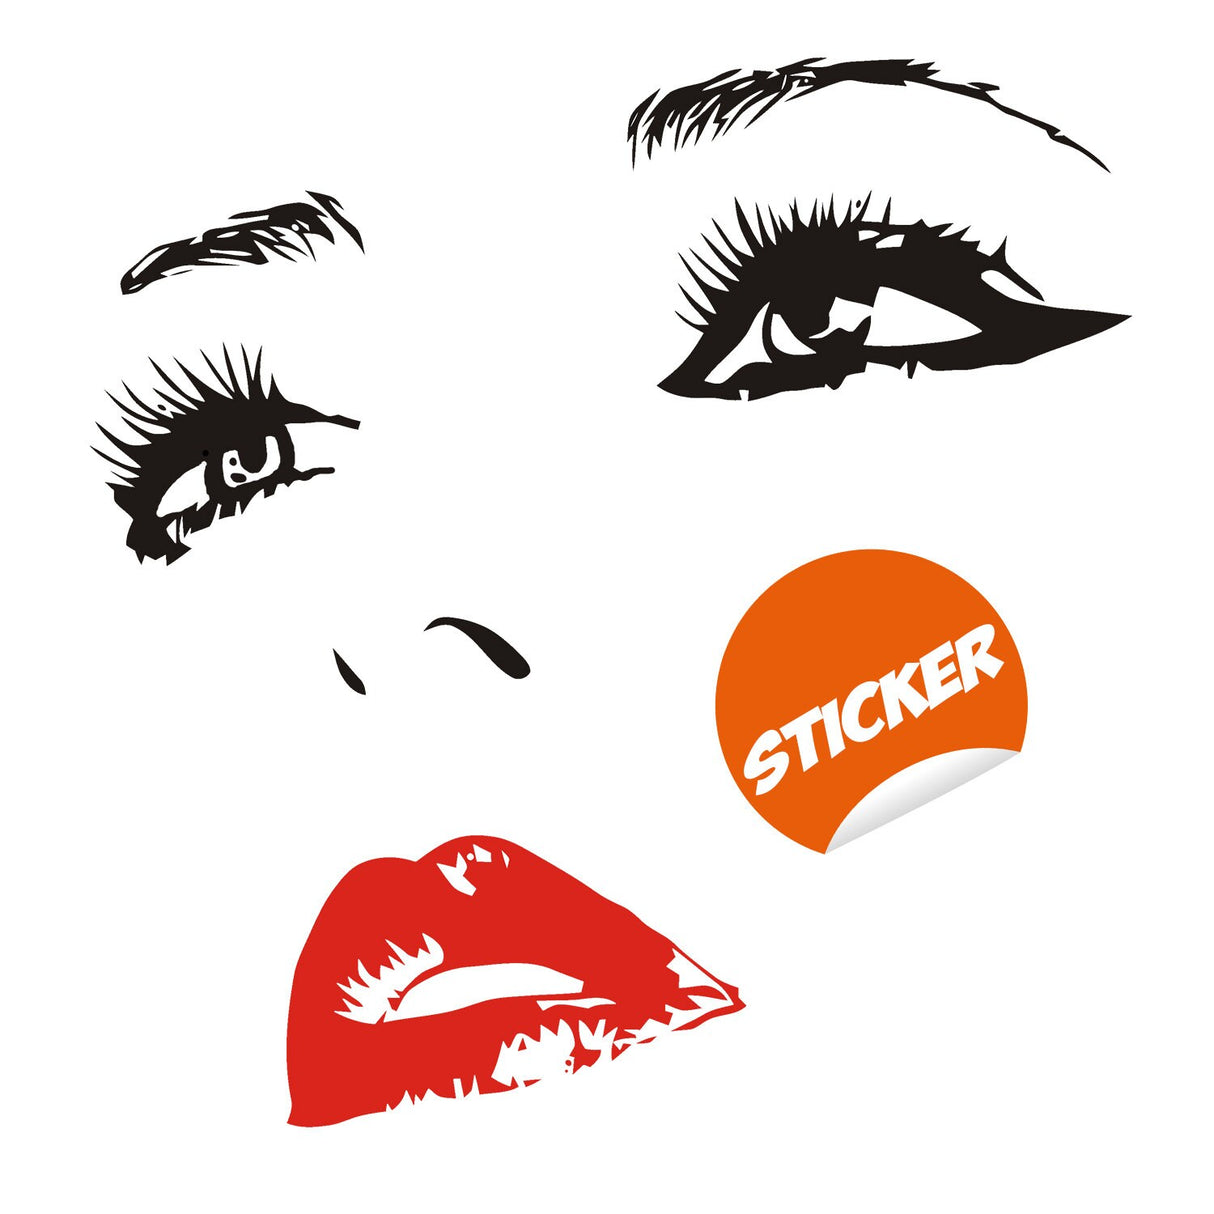 Woman Face Black Wall Vinyl Sticker - Salon Girl Happy Women Eye Window Beauty Art Decal